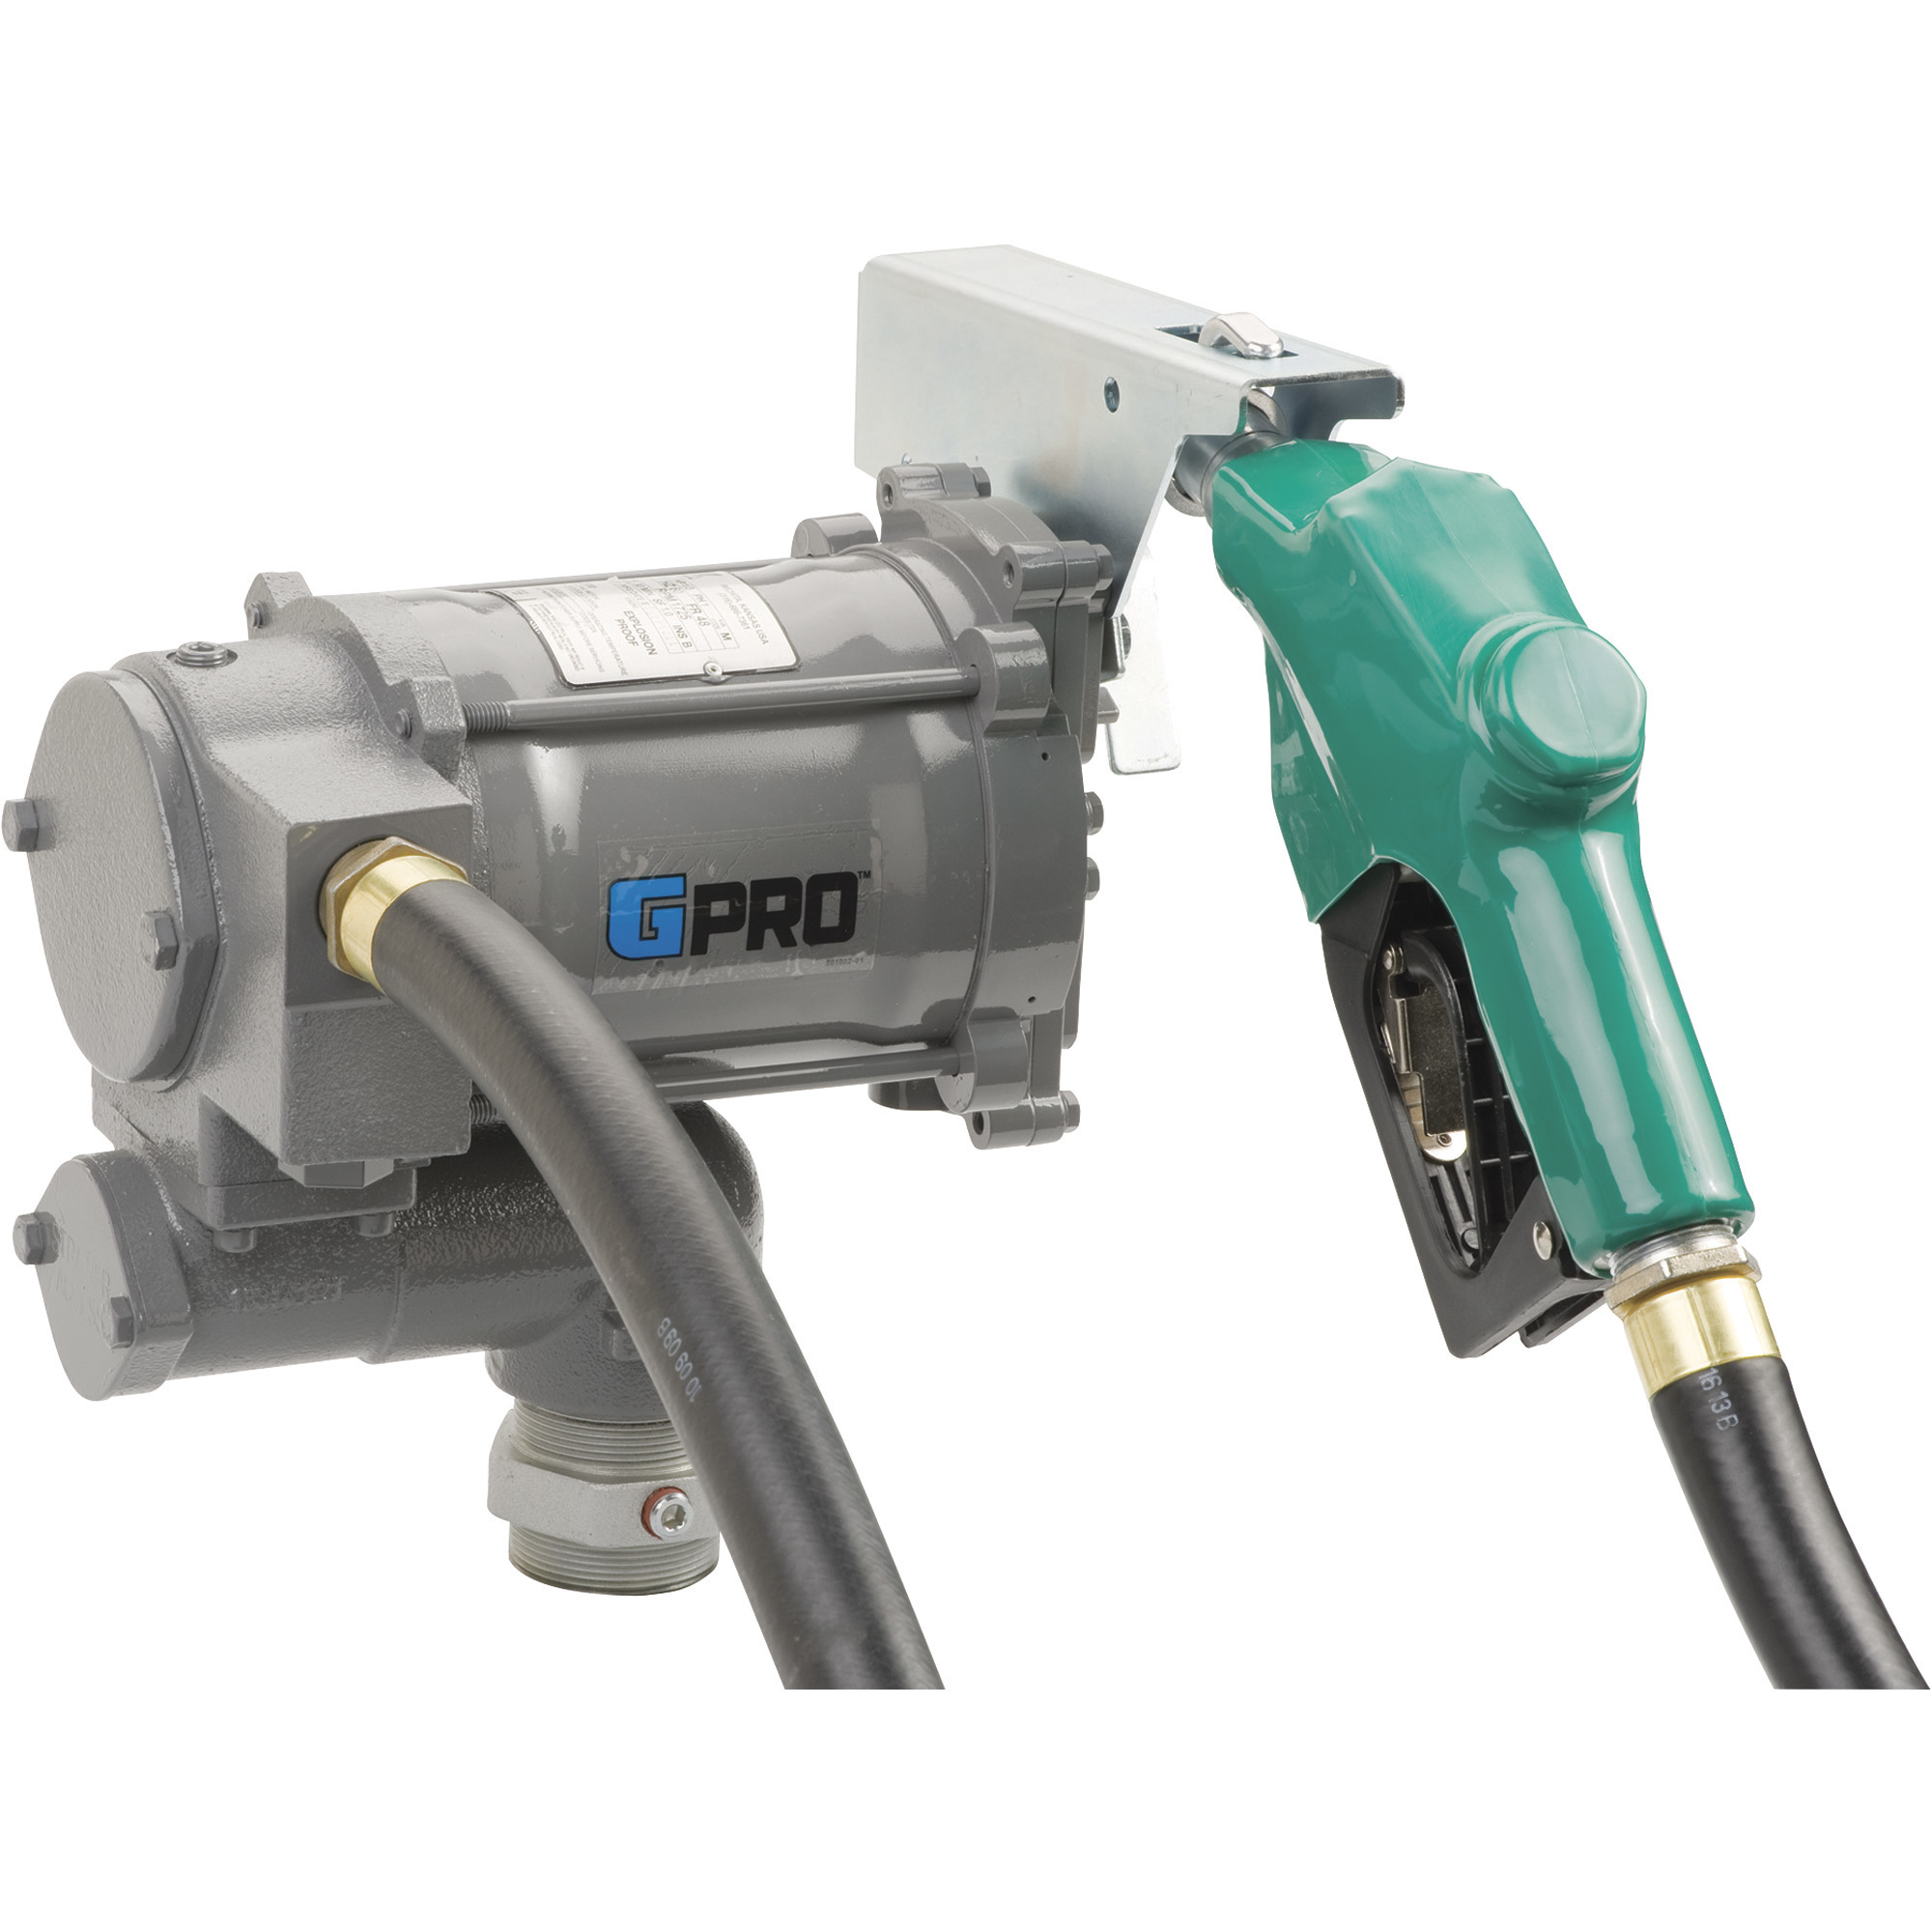 GPRO 115V Fuel Transfer Pump, 20 GPM, Automatic Nozzle, Hose, Model PRO20-115AD